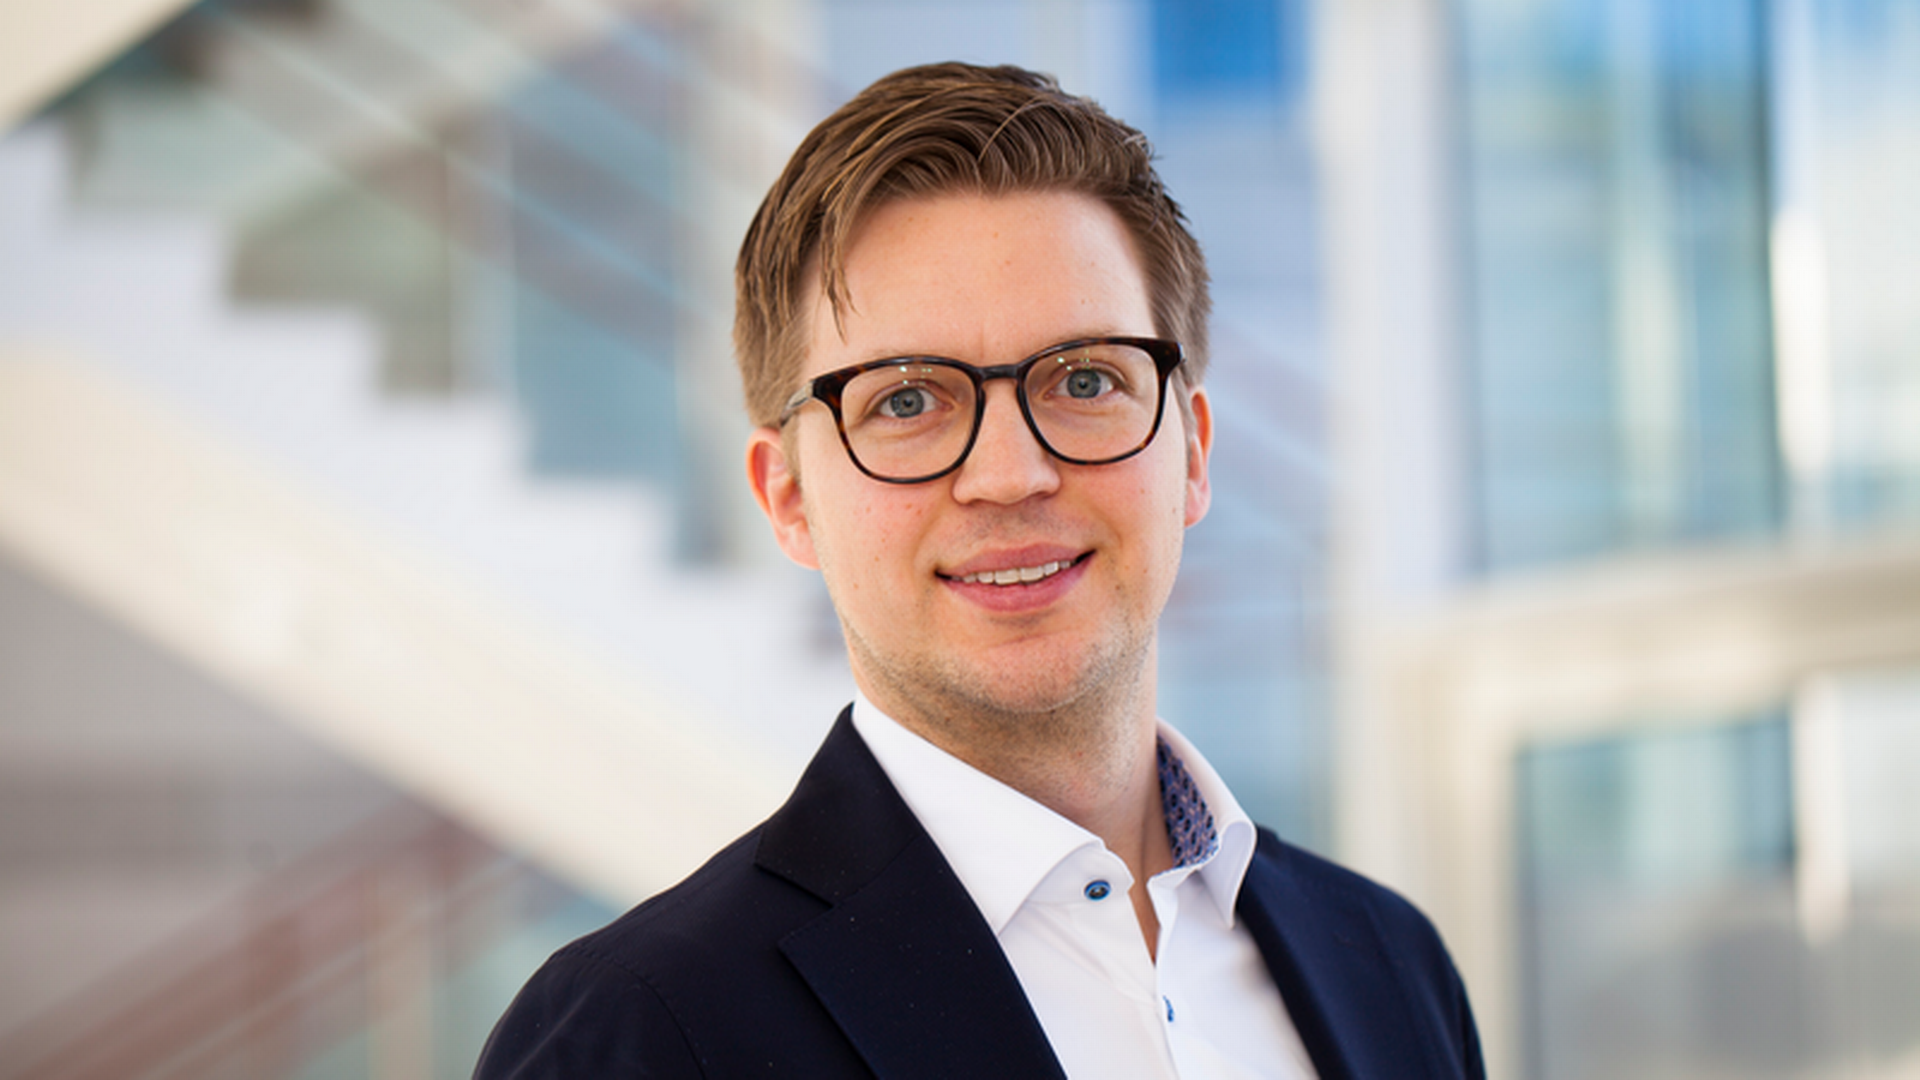 Kristofer Dreiman is the head of responsible investments at Länsförsäkringar. | Photo: Länsförsäkringar / PR